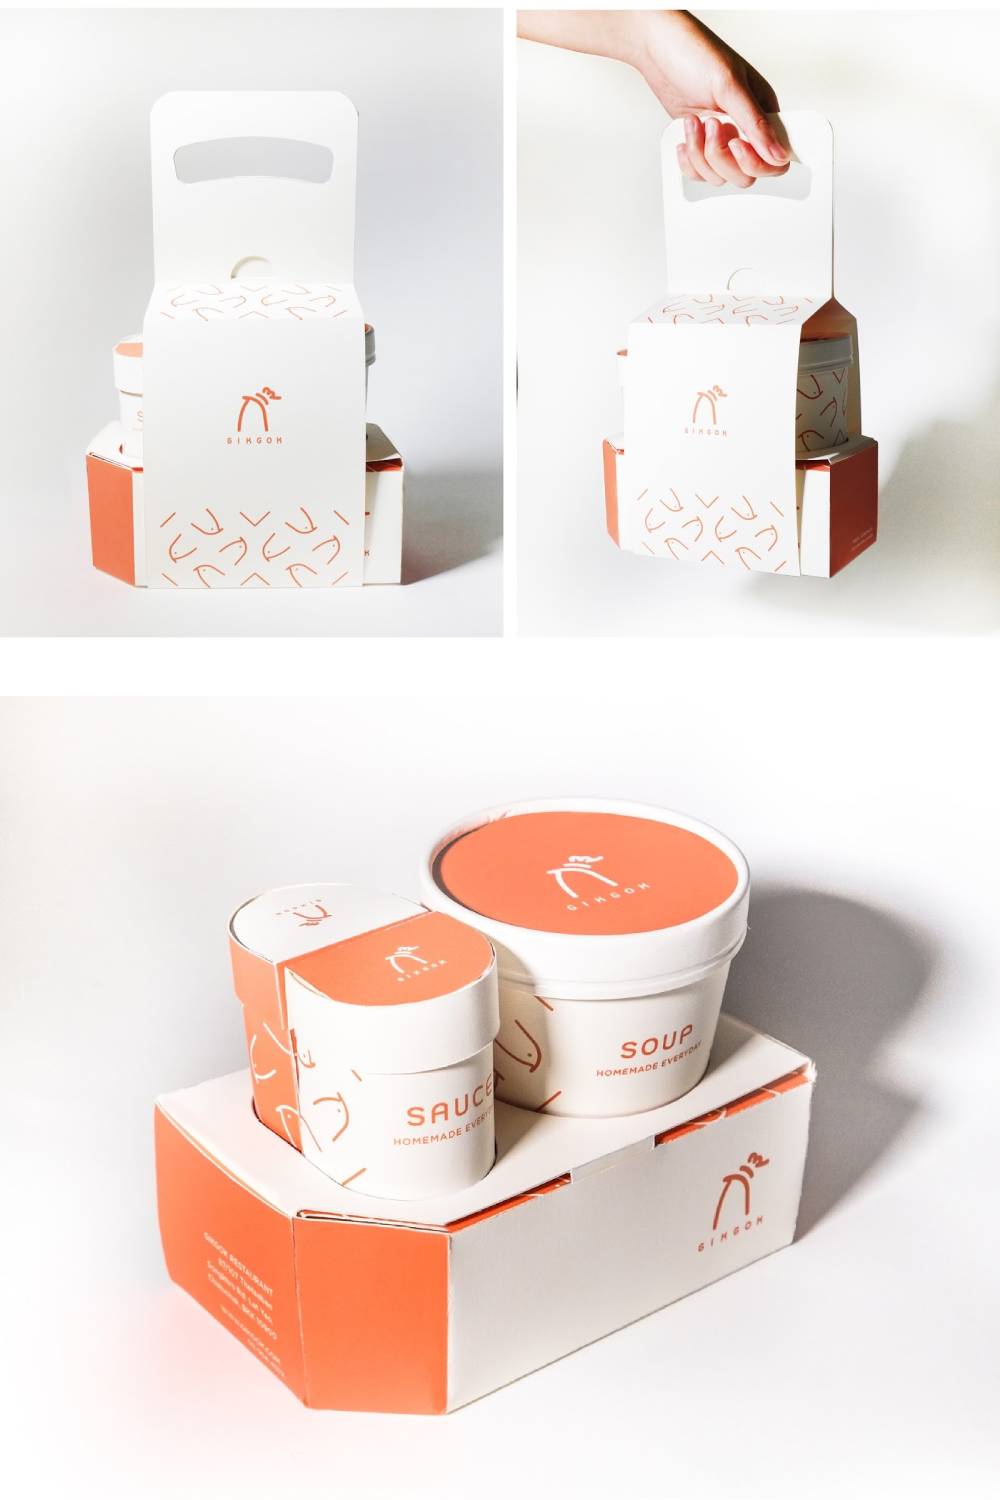 creative food packaging designs